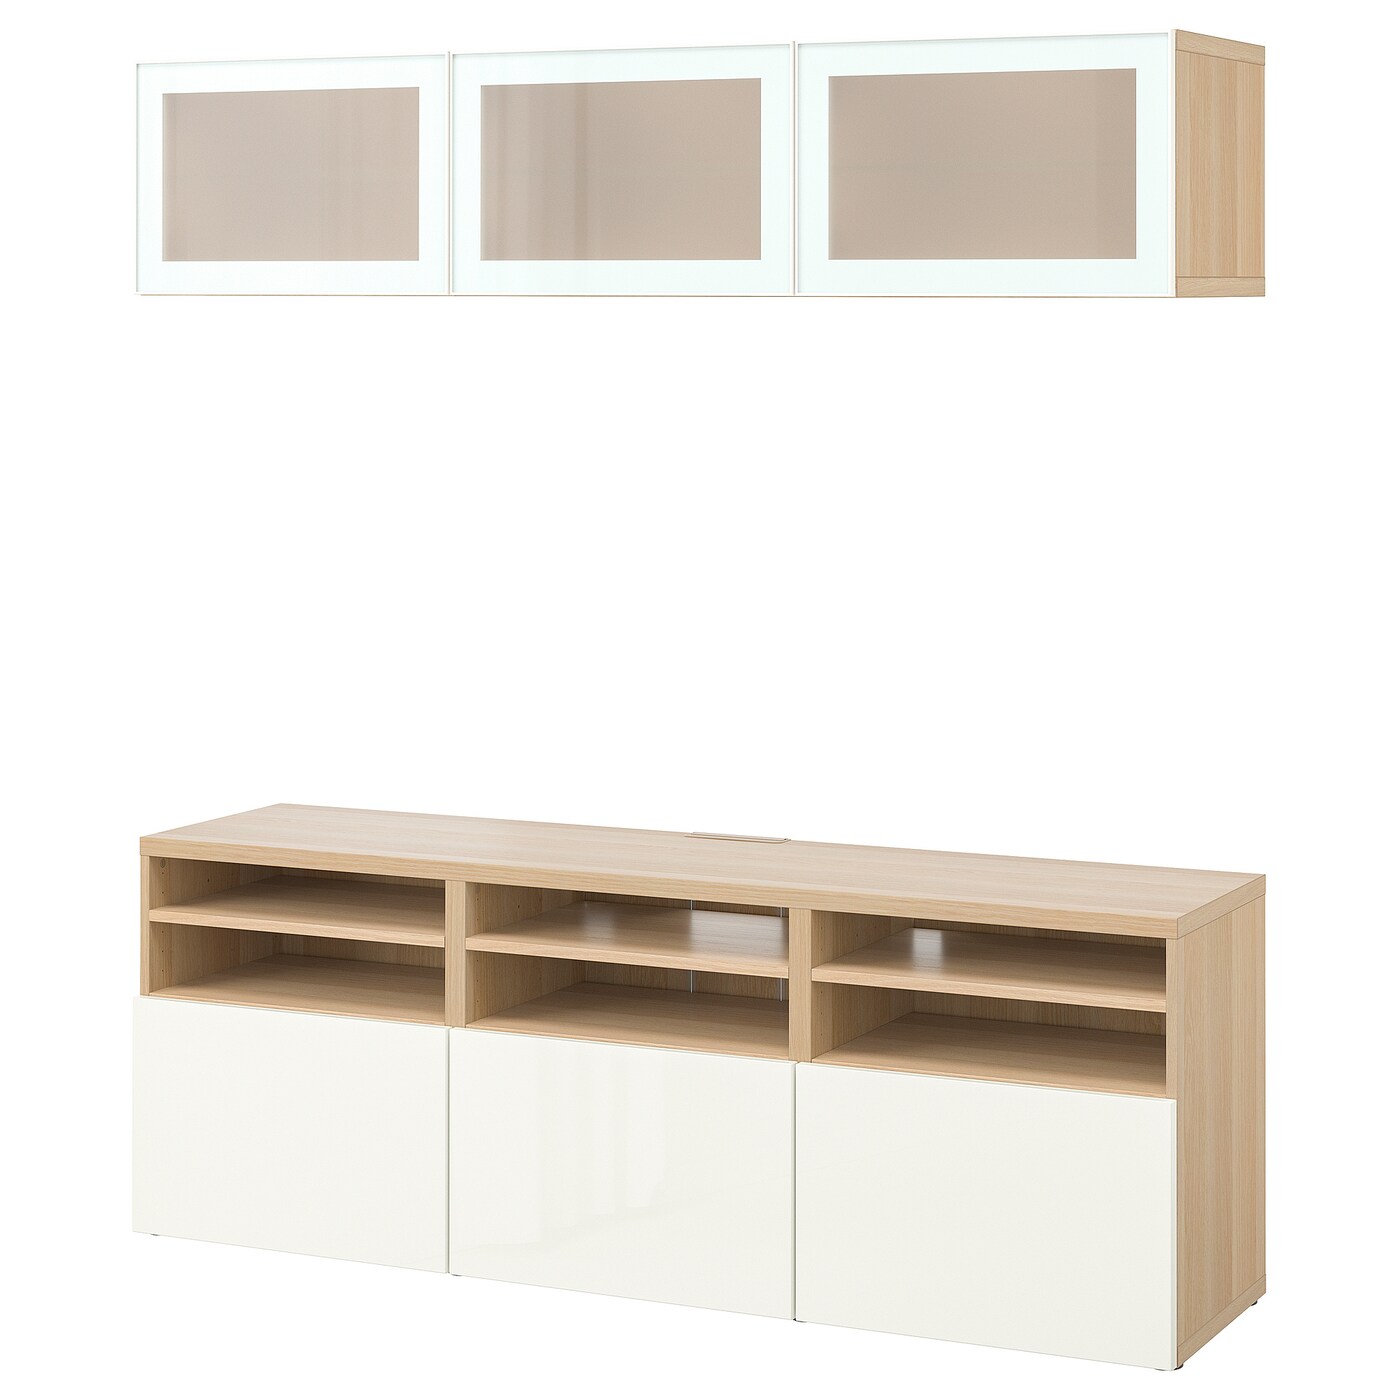 Комбинация для хранения ТВ - IKEA BESTÅ/BESTA, 192x42x180см, белый/светло-коричневый, БЕСТО ИКЕА